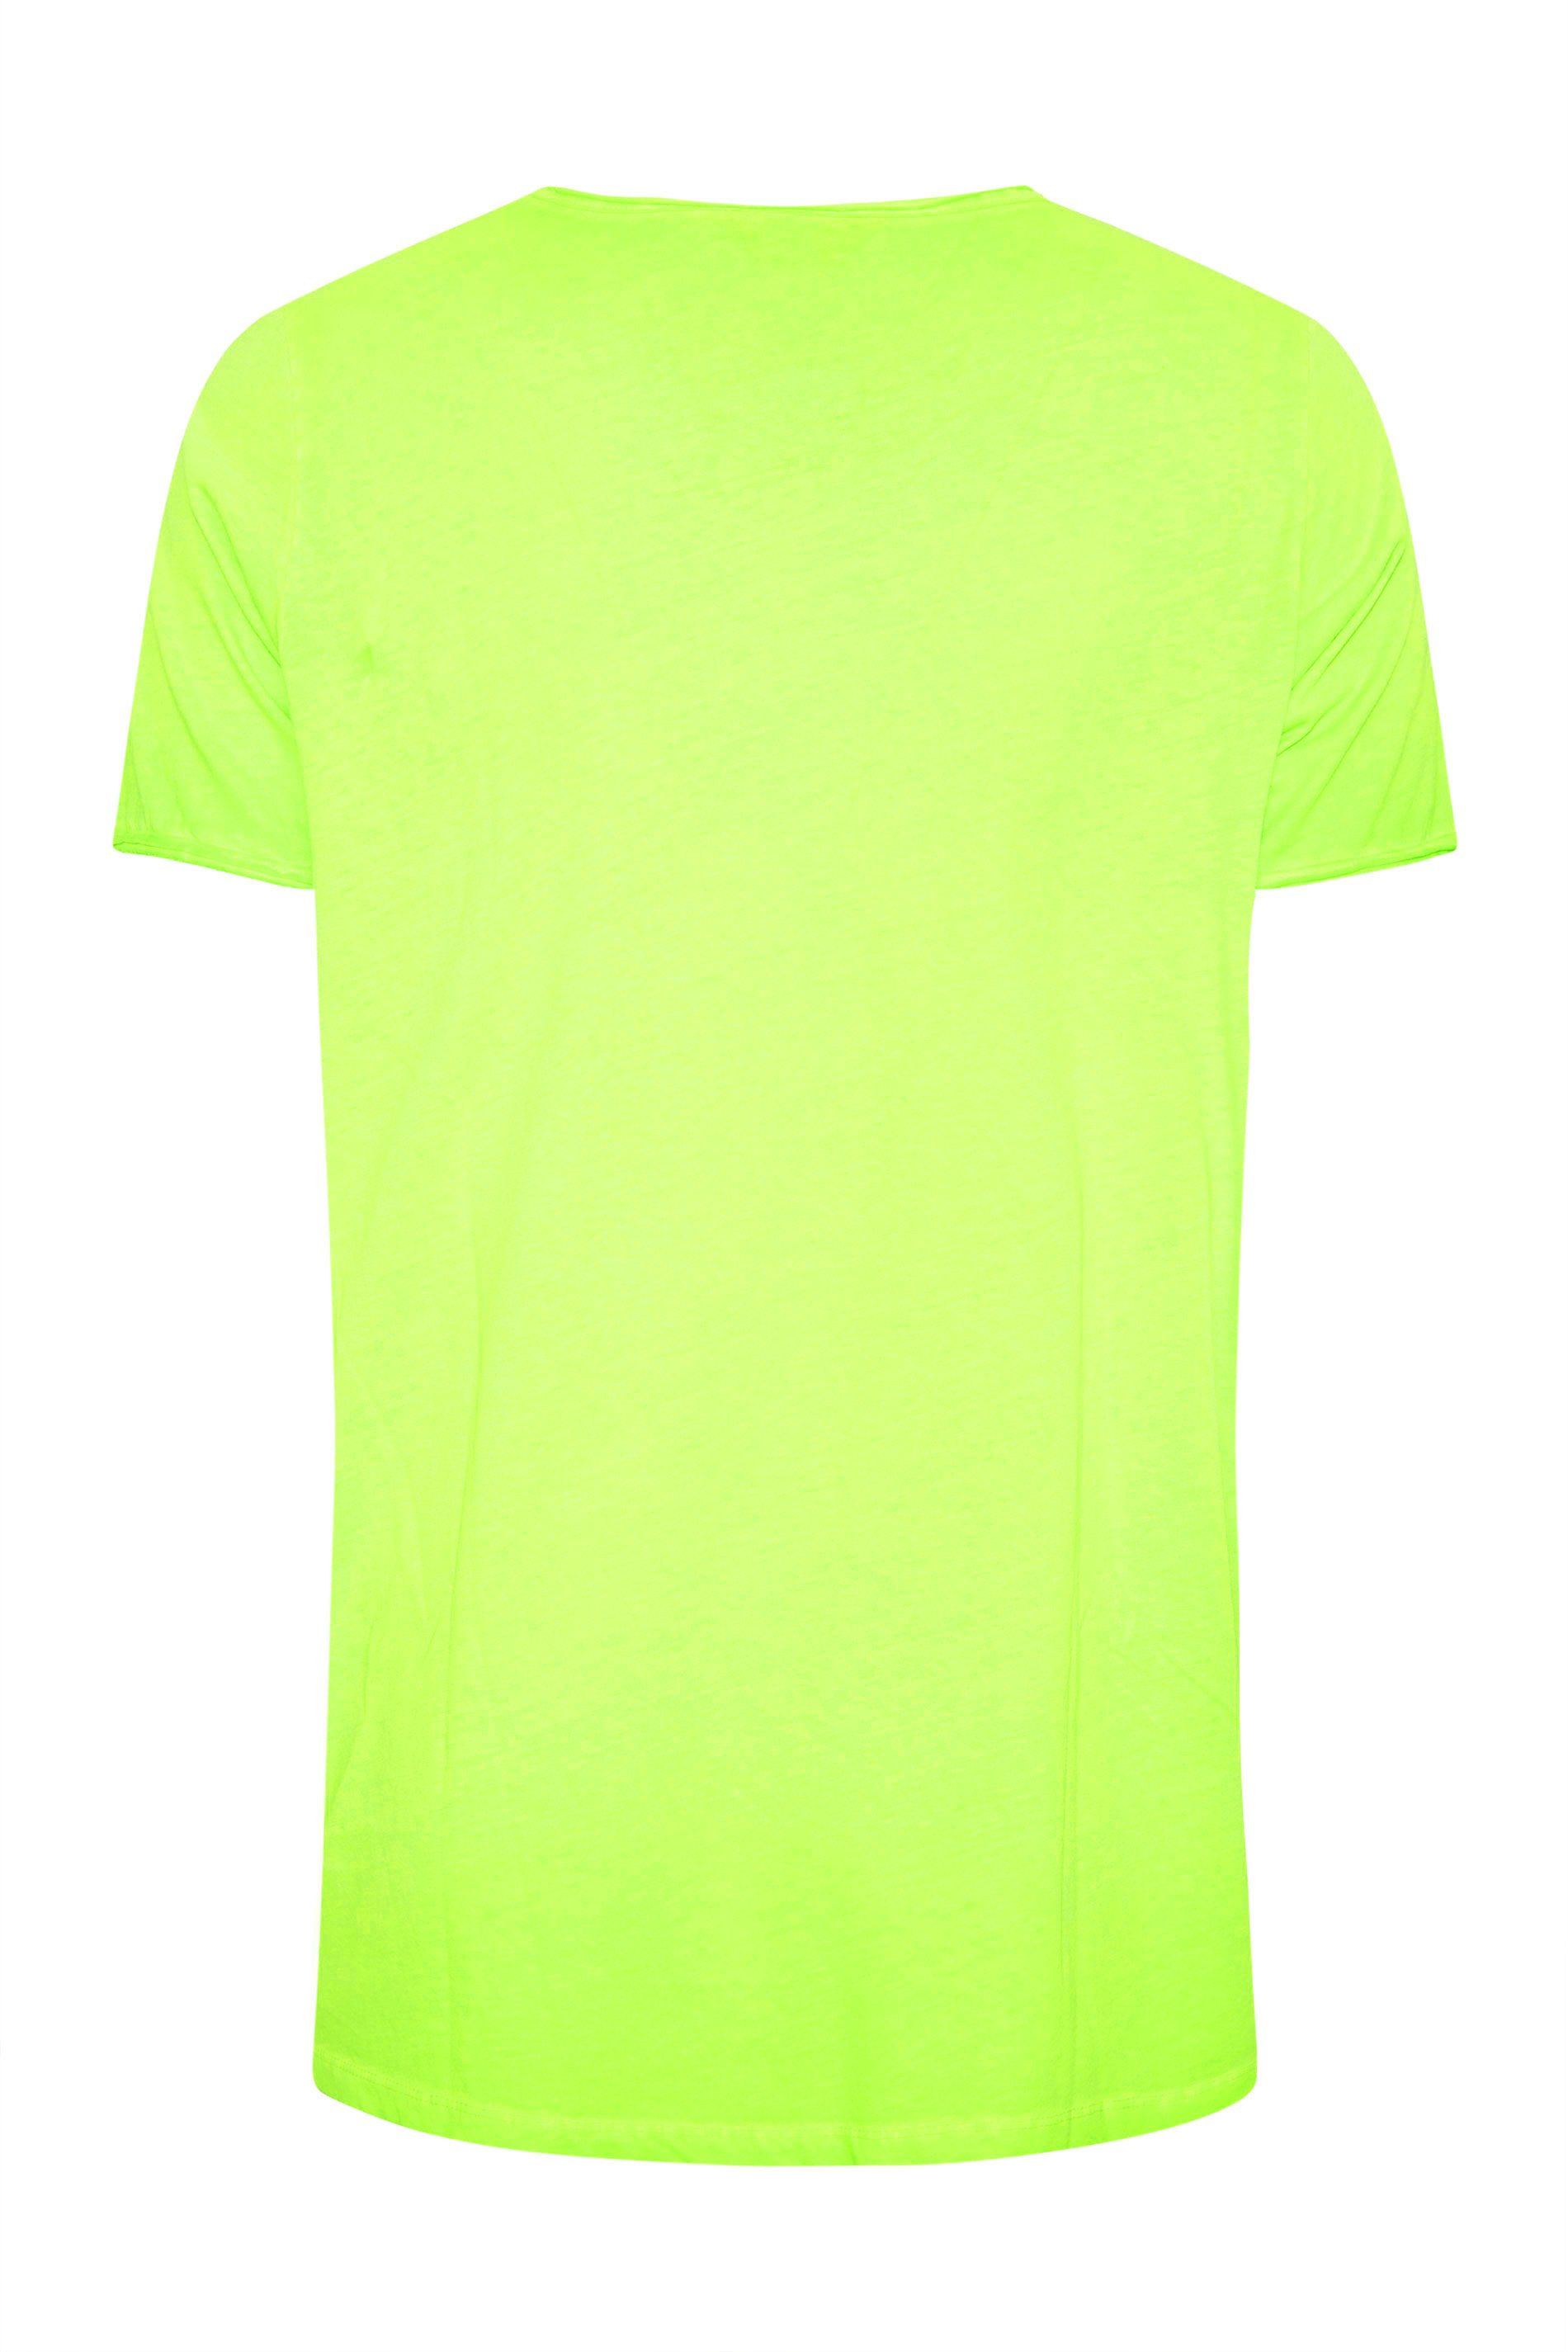 Grande taille  Tops Grande taille  T-Shirts Basiques & Débardeurs | T-Shirt Vert Fluo Manches Courtes Effilochées - TN36968